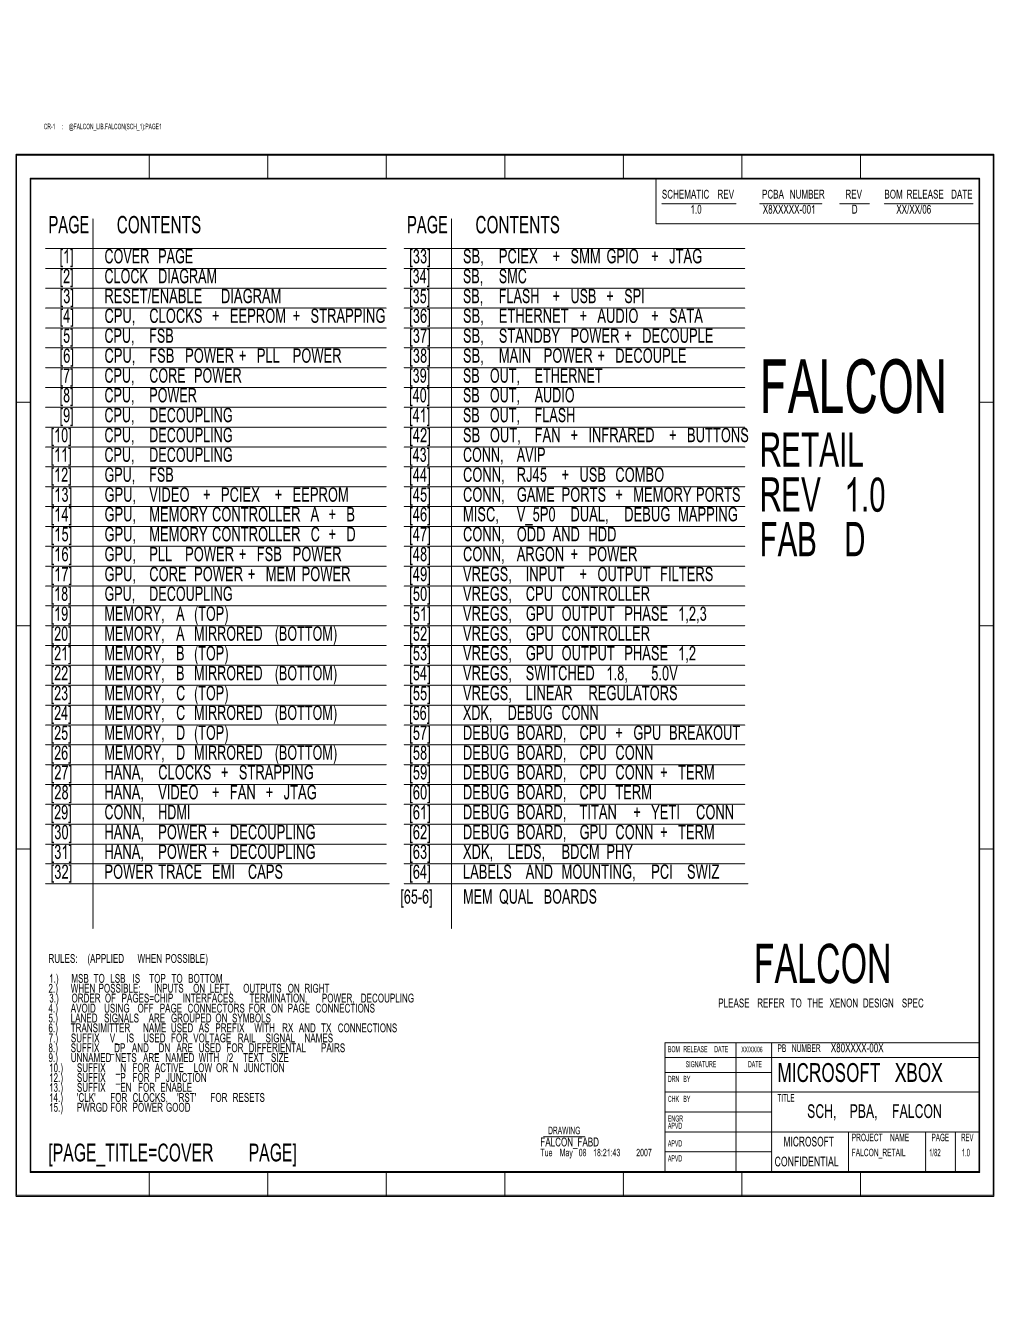 Falcon Lib.Falcon(Sch 1):Page1 Schematic Rev Pcba Number Rev Bom Release Date